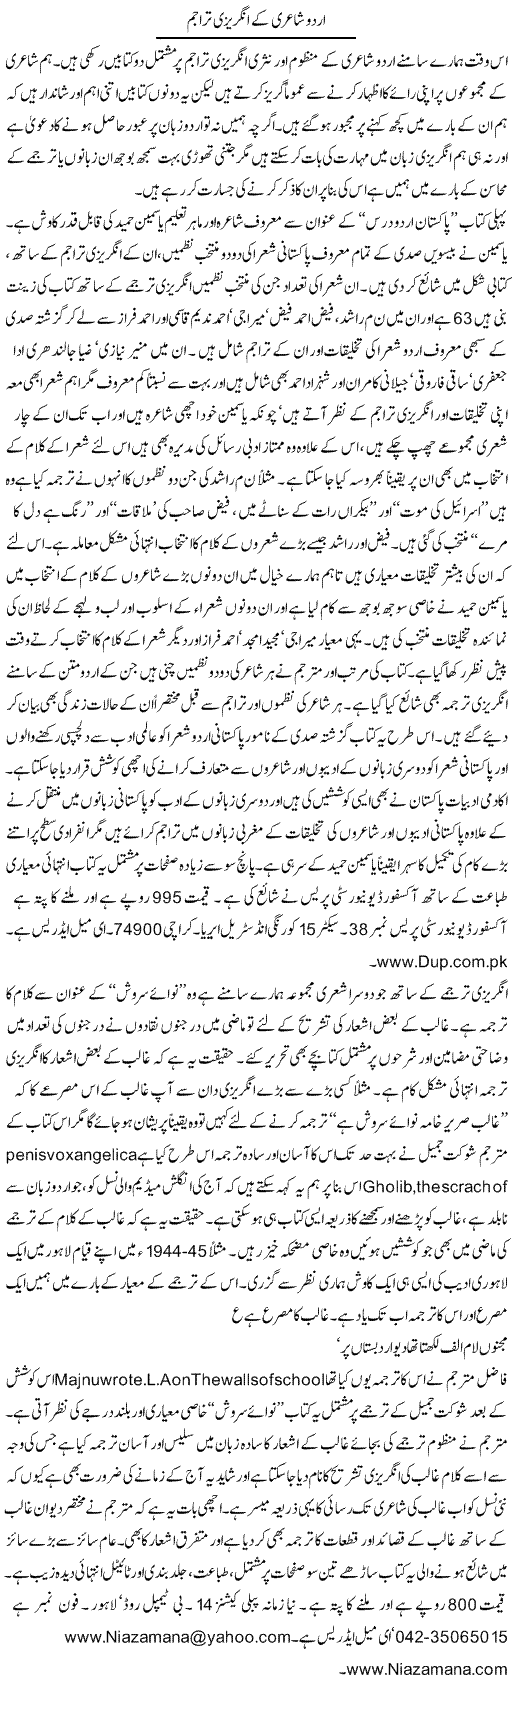 Urdu Poetry Express Column Hameed Akhtar 4 December 2010